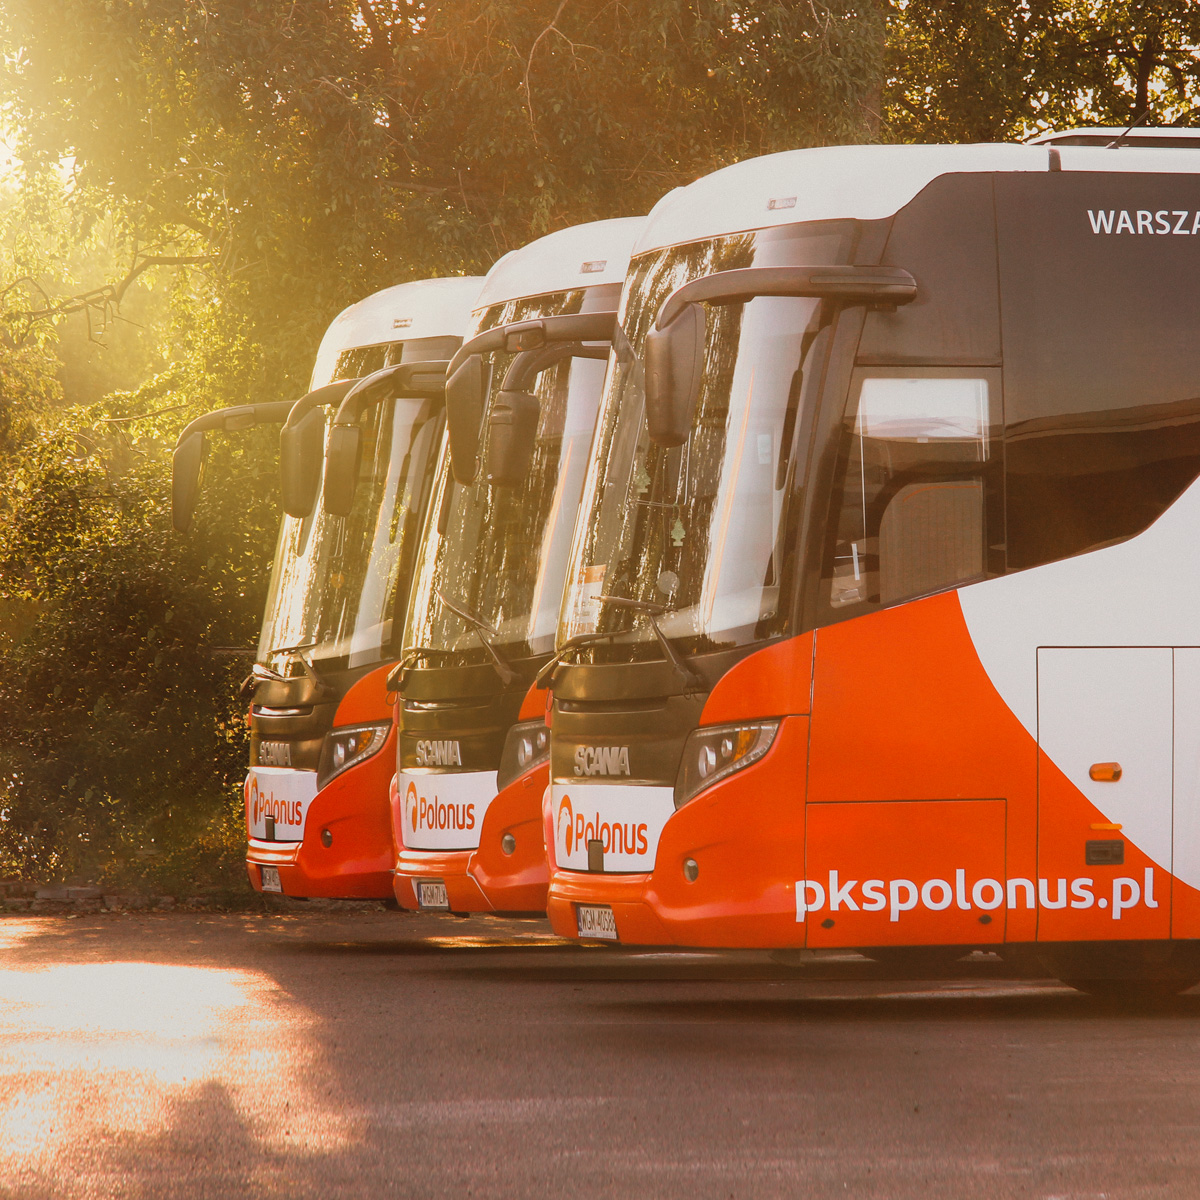 𝗟𝗲𝘁𝗻𝗶𝗲 𝗽𝗼𝗱𝗿𝗼́𝘇̇𝗲 𝘇 #PKSPolonus Niezależnie od wybranego kierunku 🚌 podróży ważne jest, aby cieszyć 🤩 się wakacjami i odpocząć od codziennego zgiełku. Bilety kupicie na pkspolonus.pl i na dworzeconline.pl!